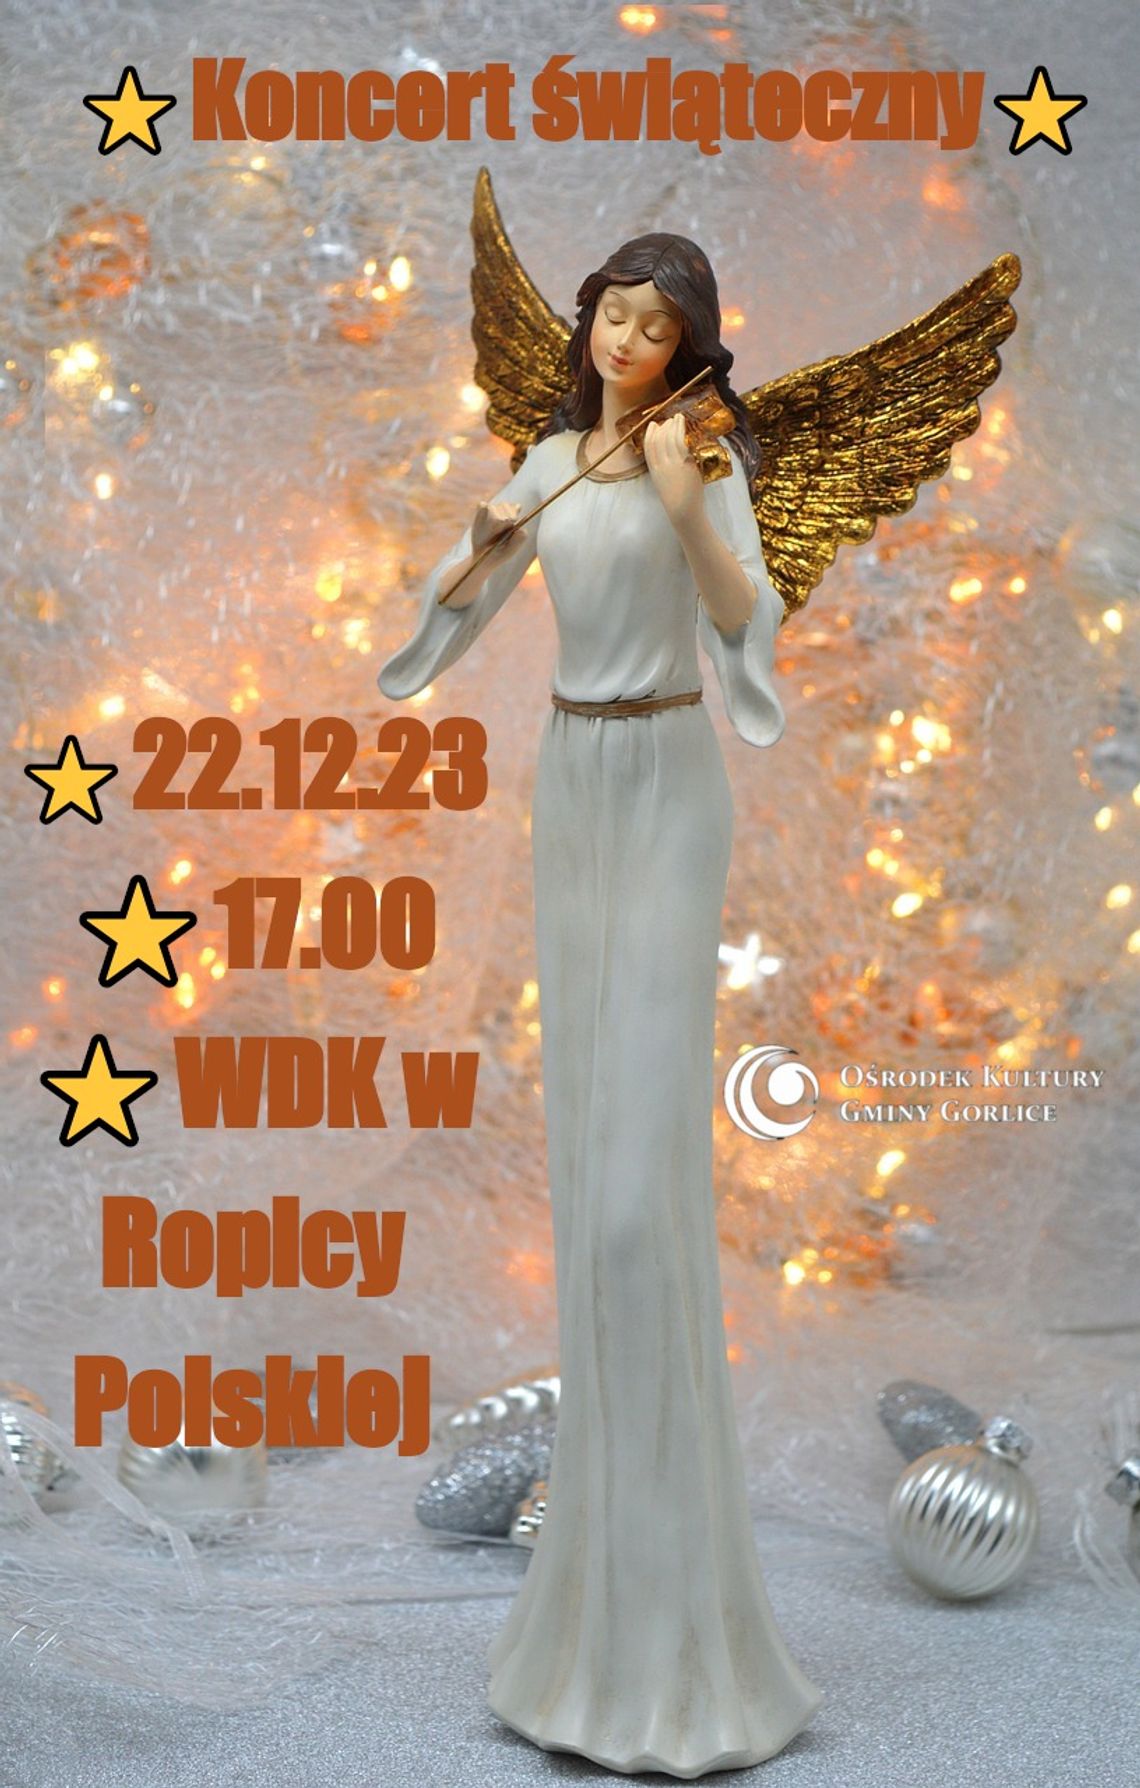 Koncert Świąteczny w Ropicy Polskiej | halogorlice.info